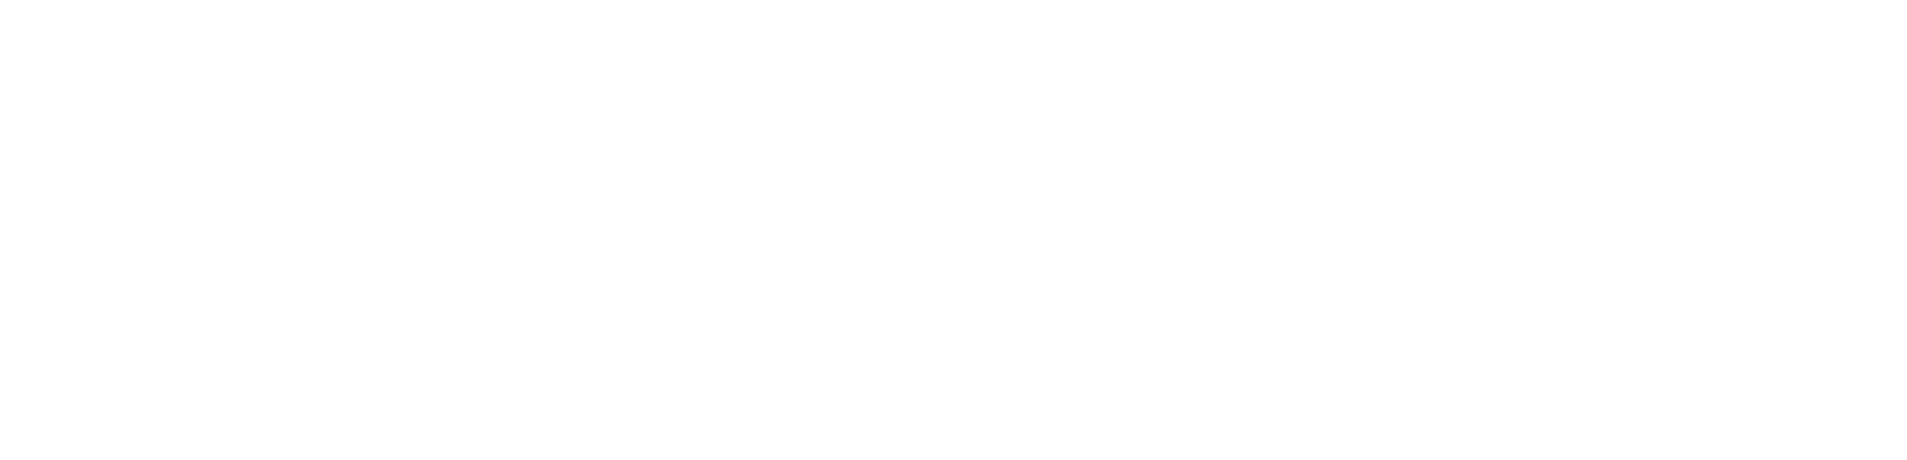 Seaton_Towson_Logo_White